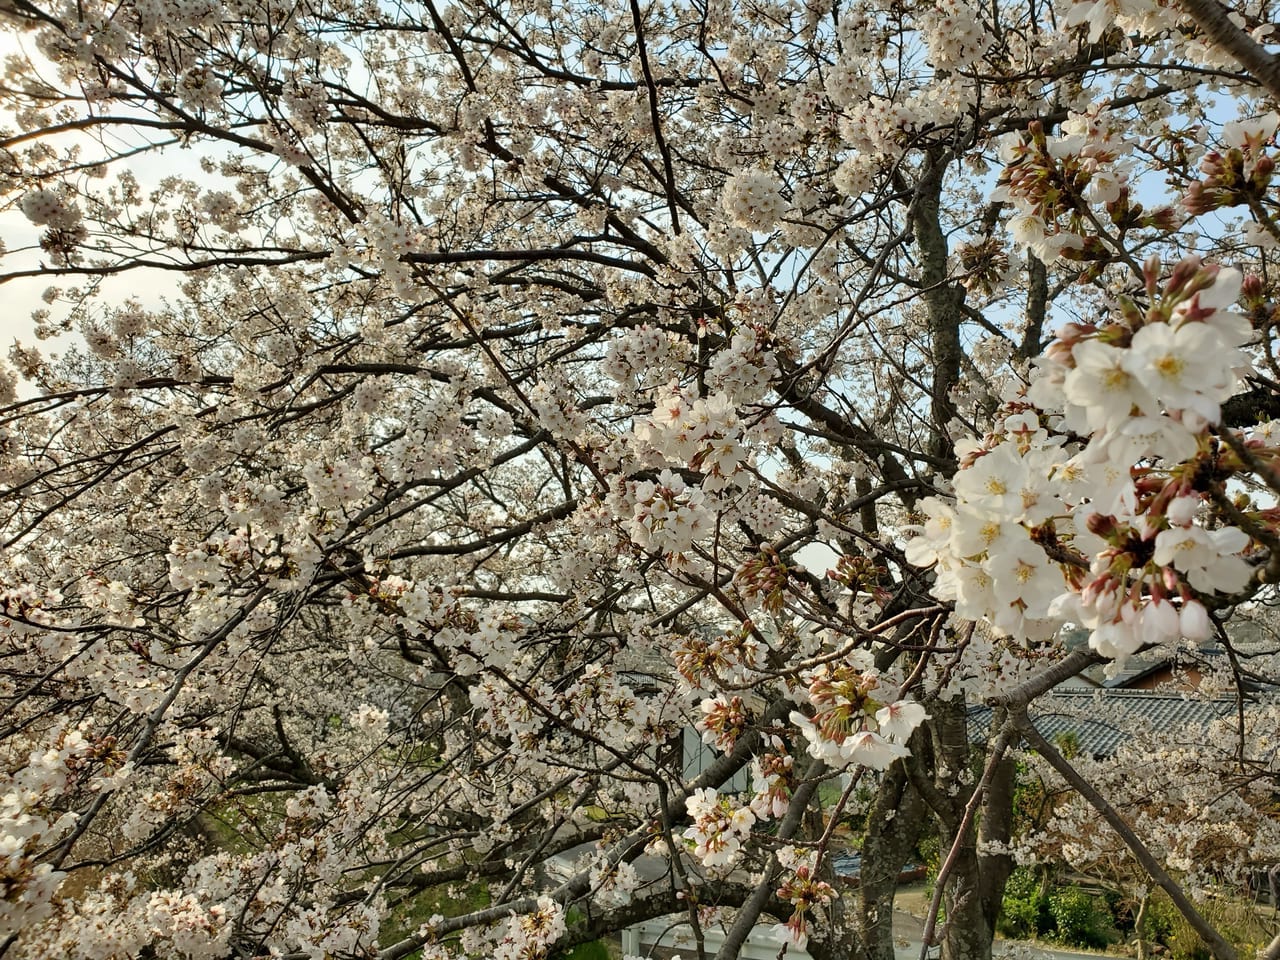 桜のお花見